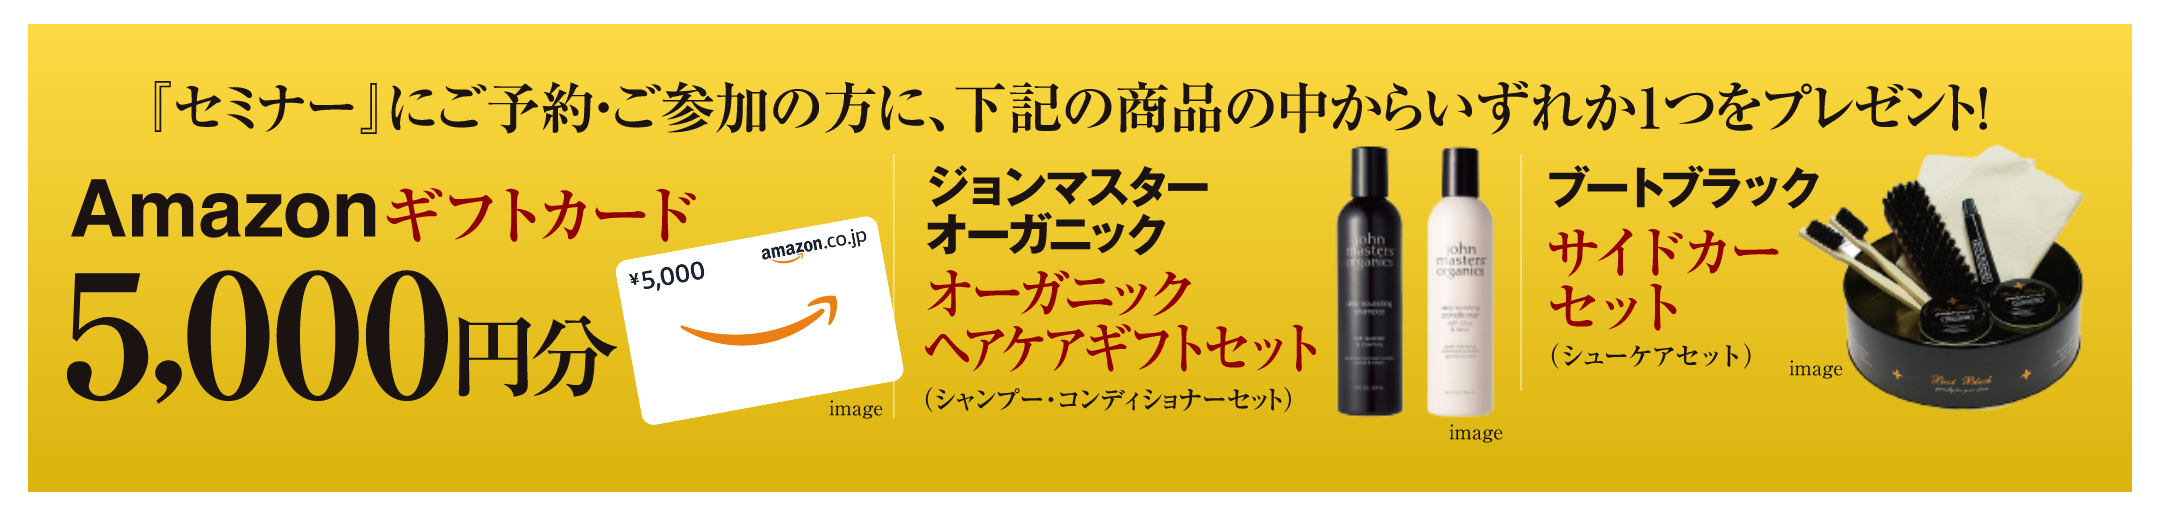 Amazonギフトカード5,000円分プレゼント